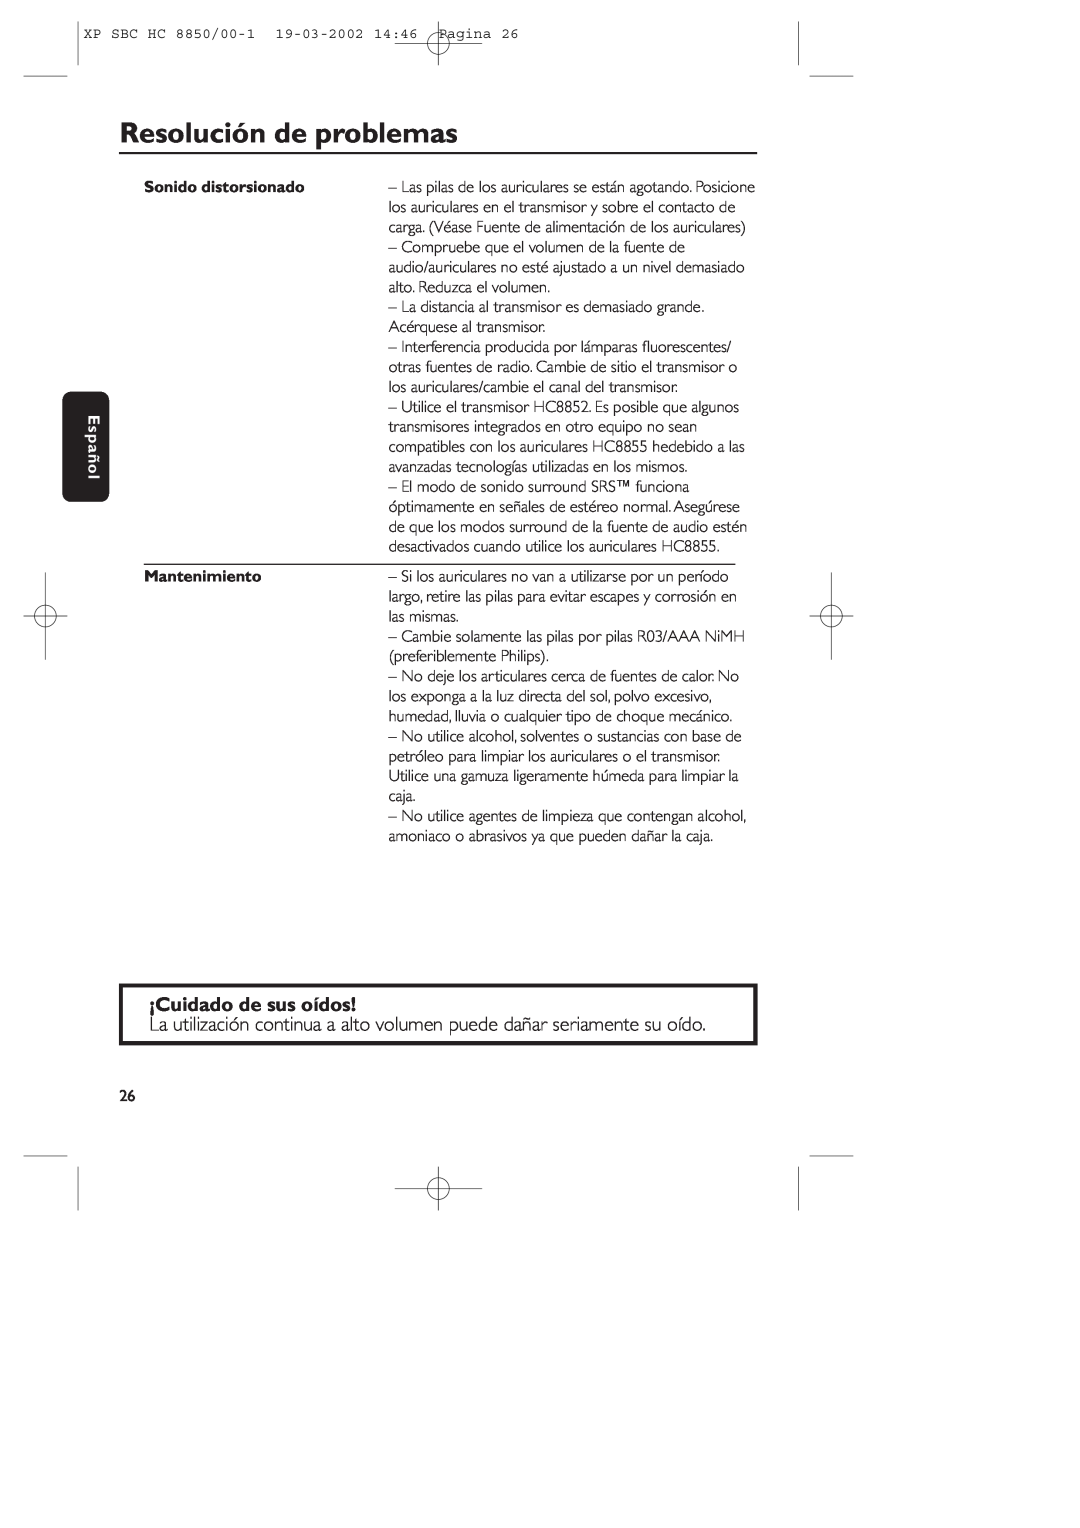 Philips HC8850 manual Resolución de problemas, ¡Cuidado de sus oídos, Español, Sonido distorsionado, Mantenimiento 